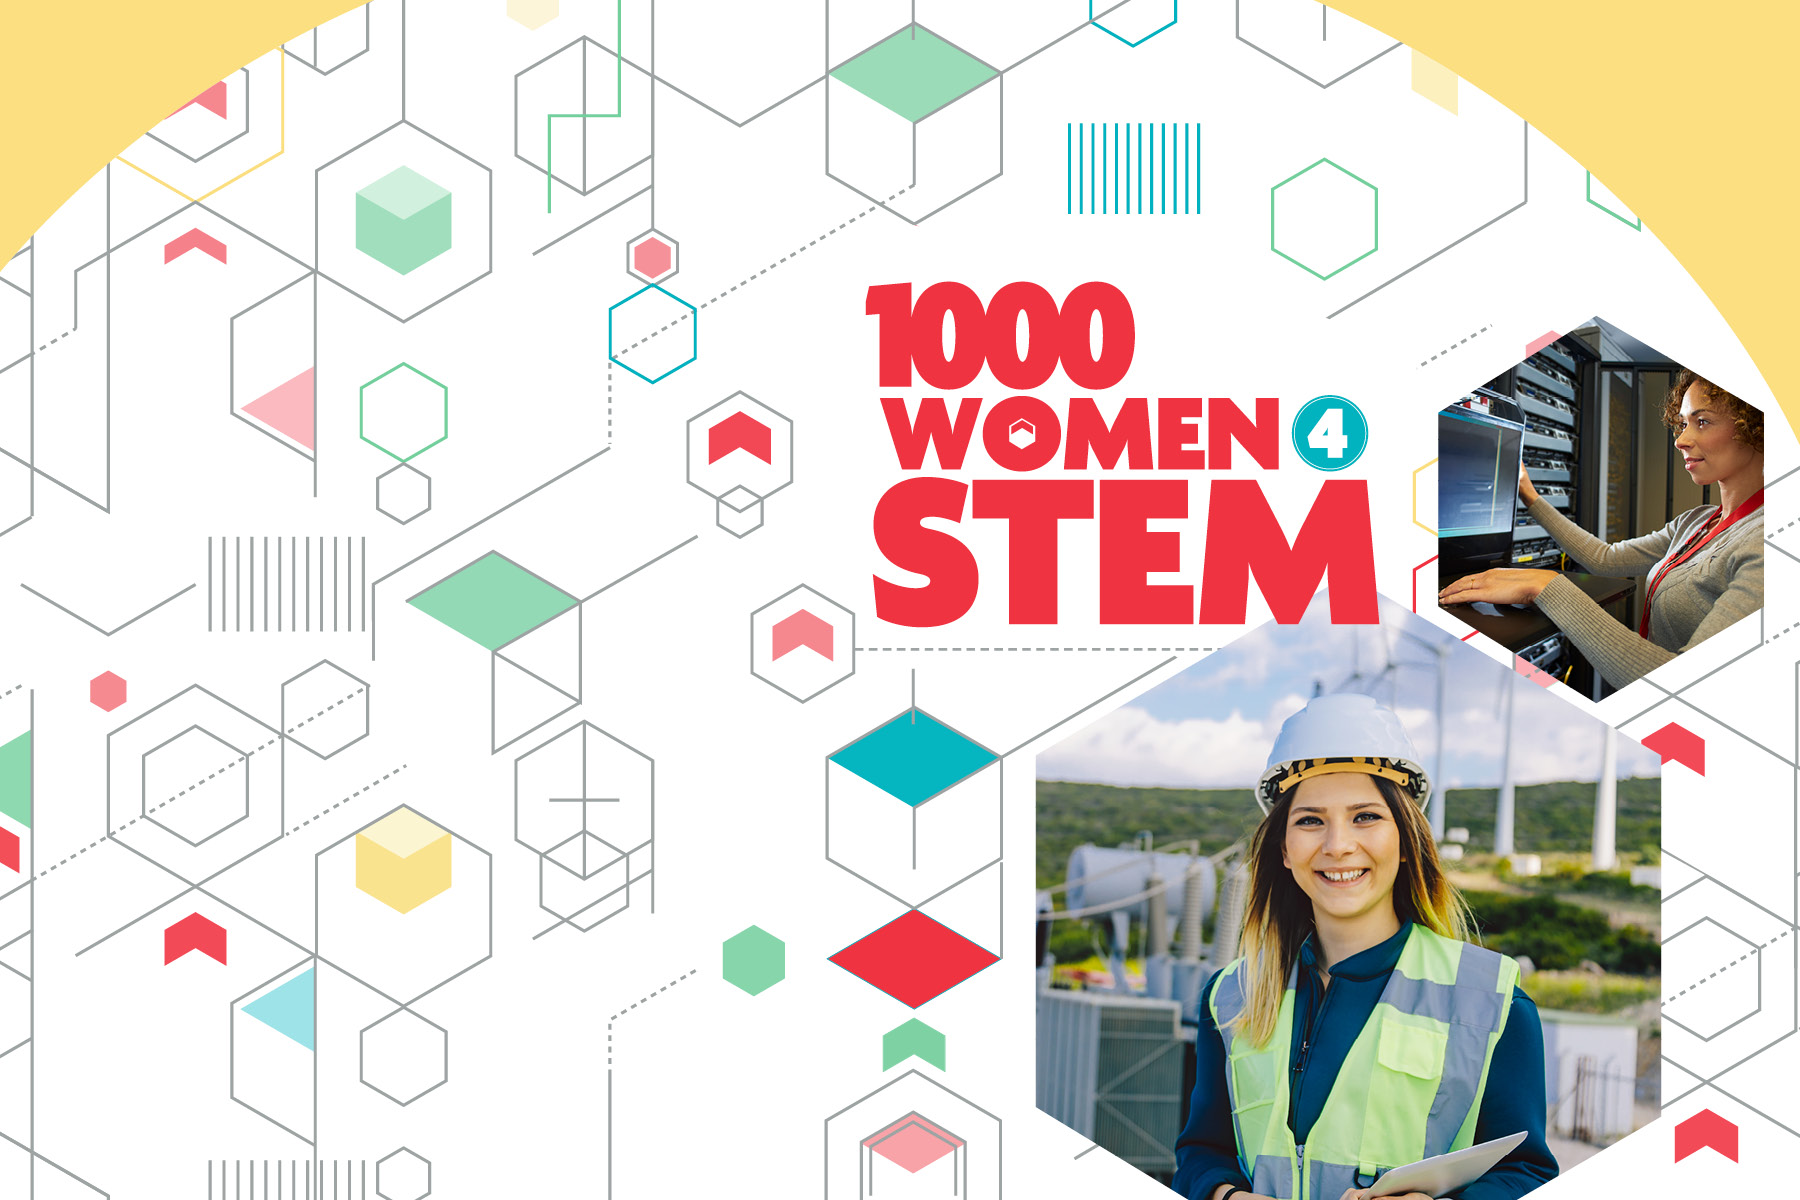 1000 Women for STEM